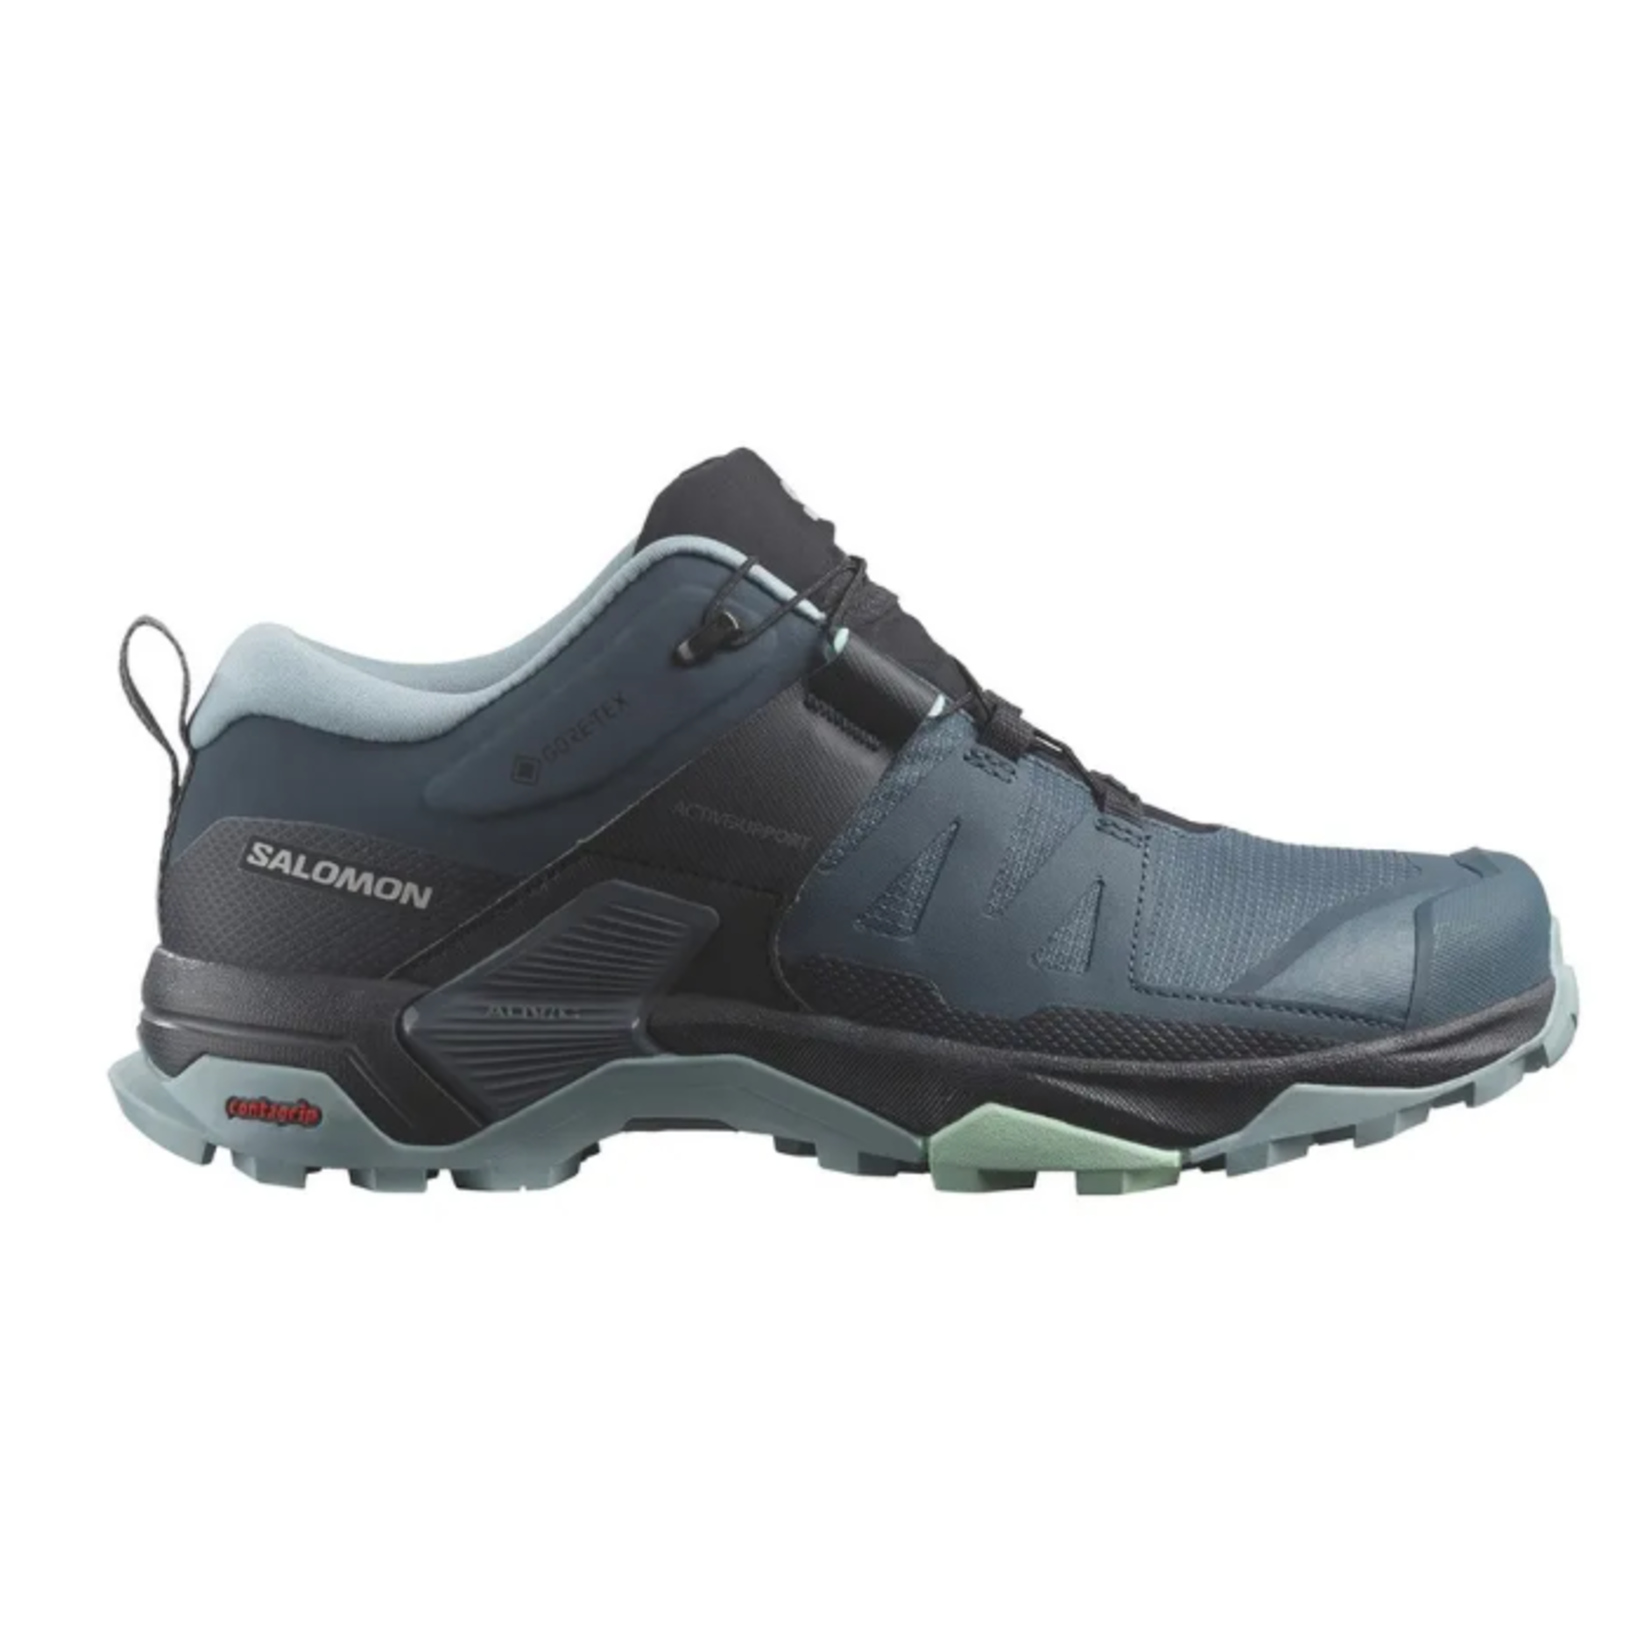 Salomon X Ultra 4 GTX Women's Hiking Shoe